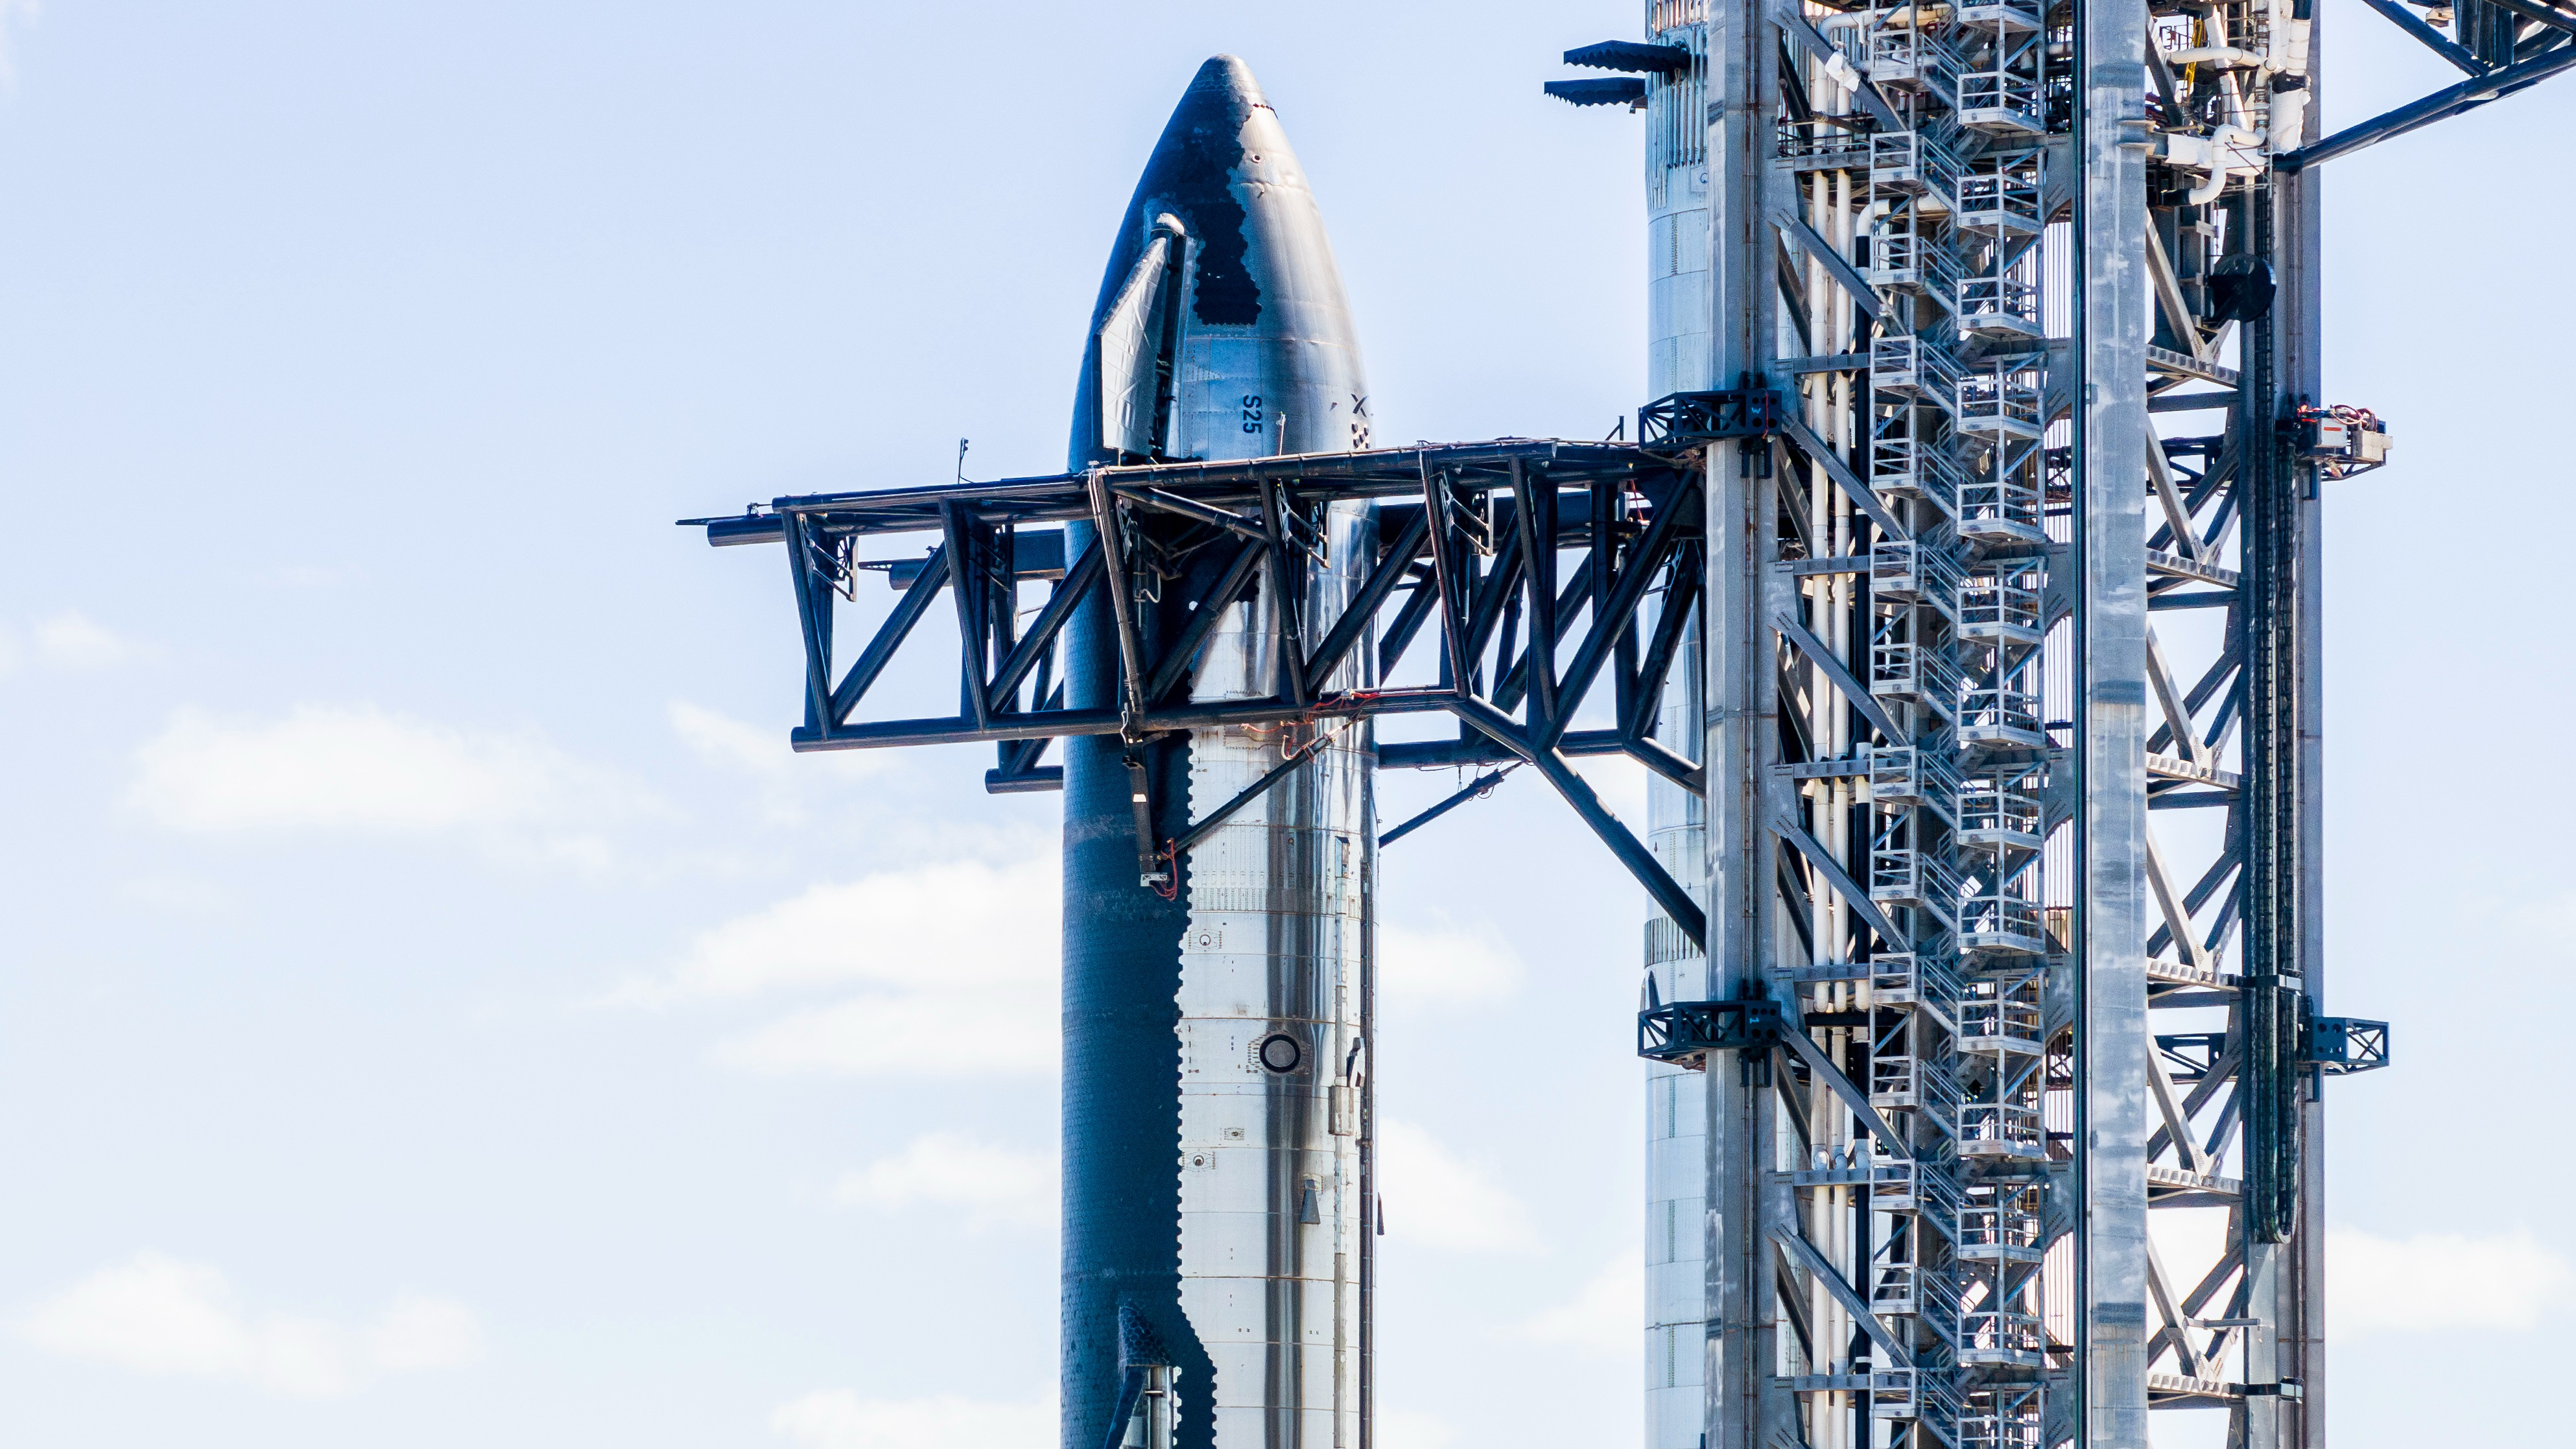 SpaceX apila Starship para prepararse para el ensayo de lanzamiento (fotos)